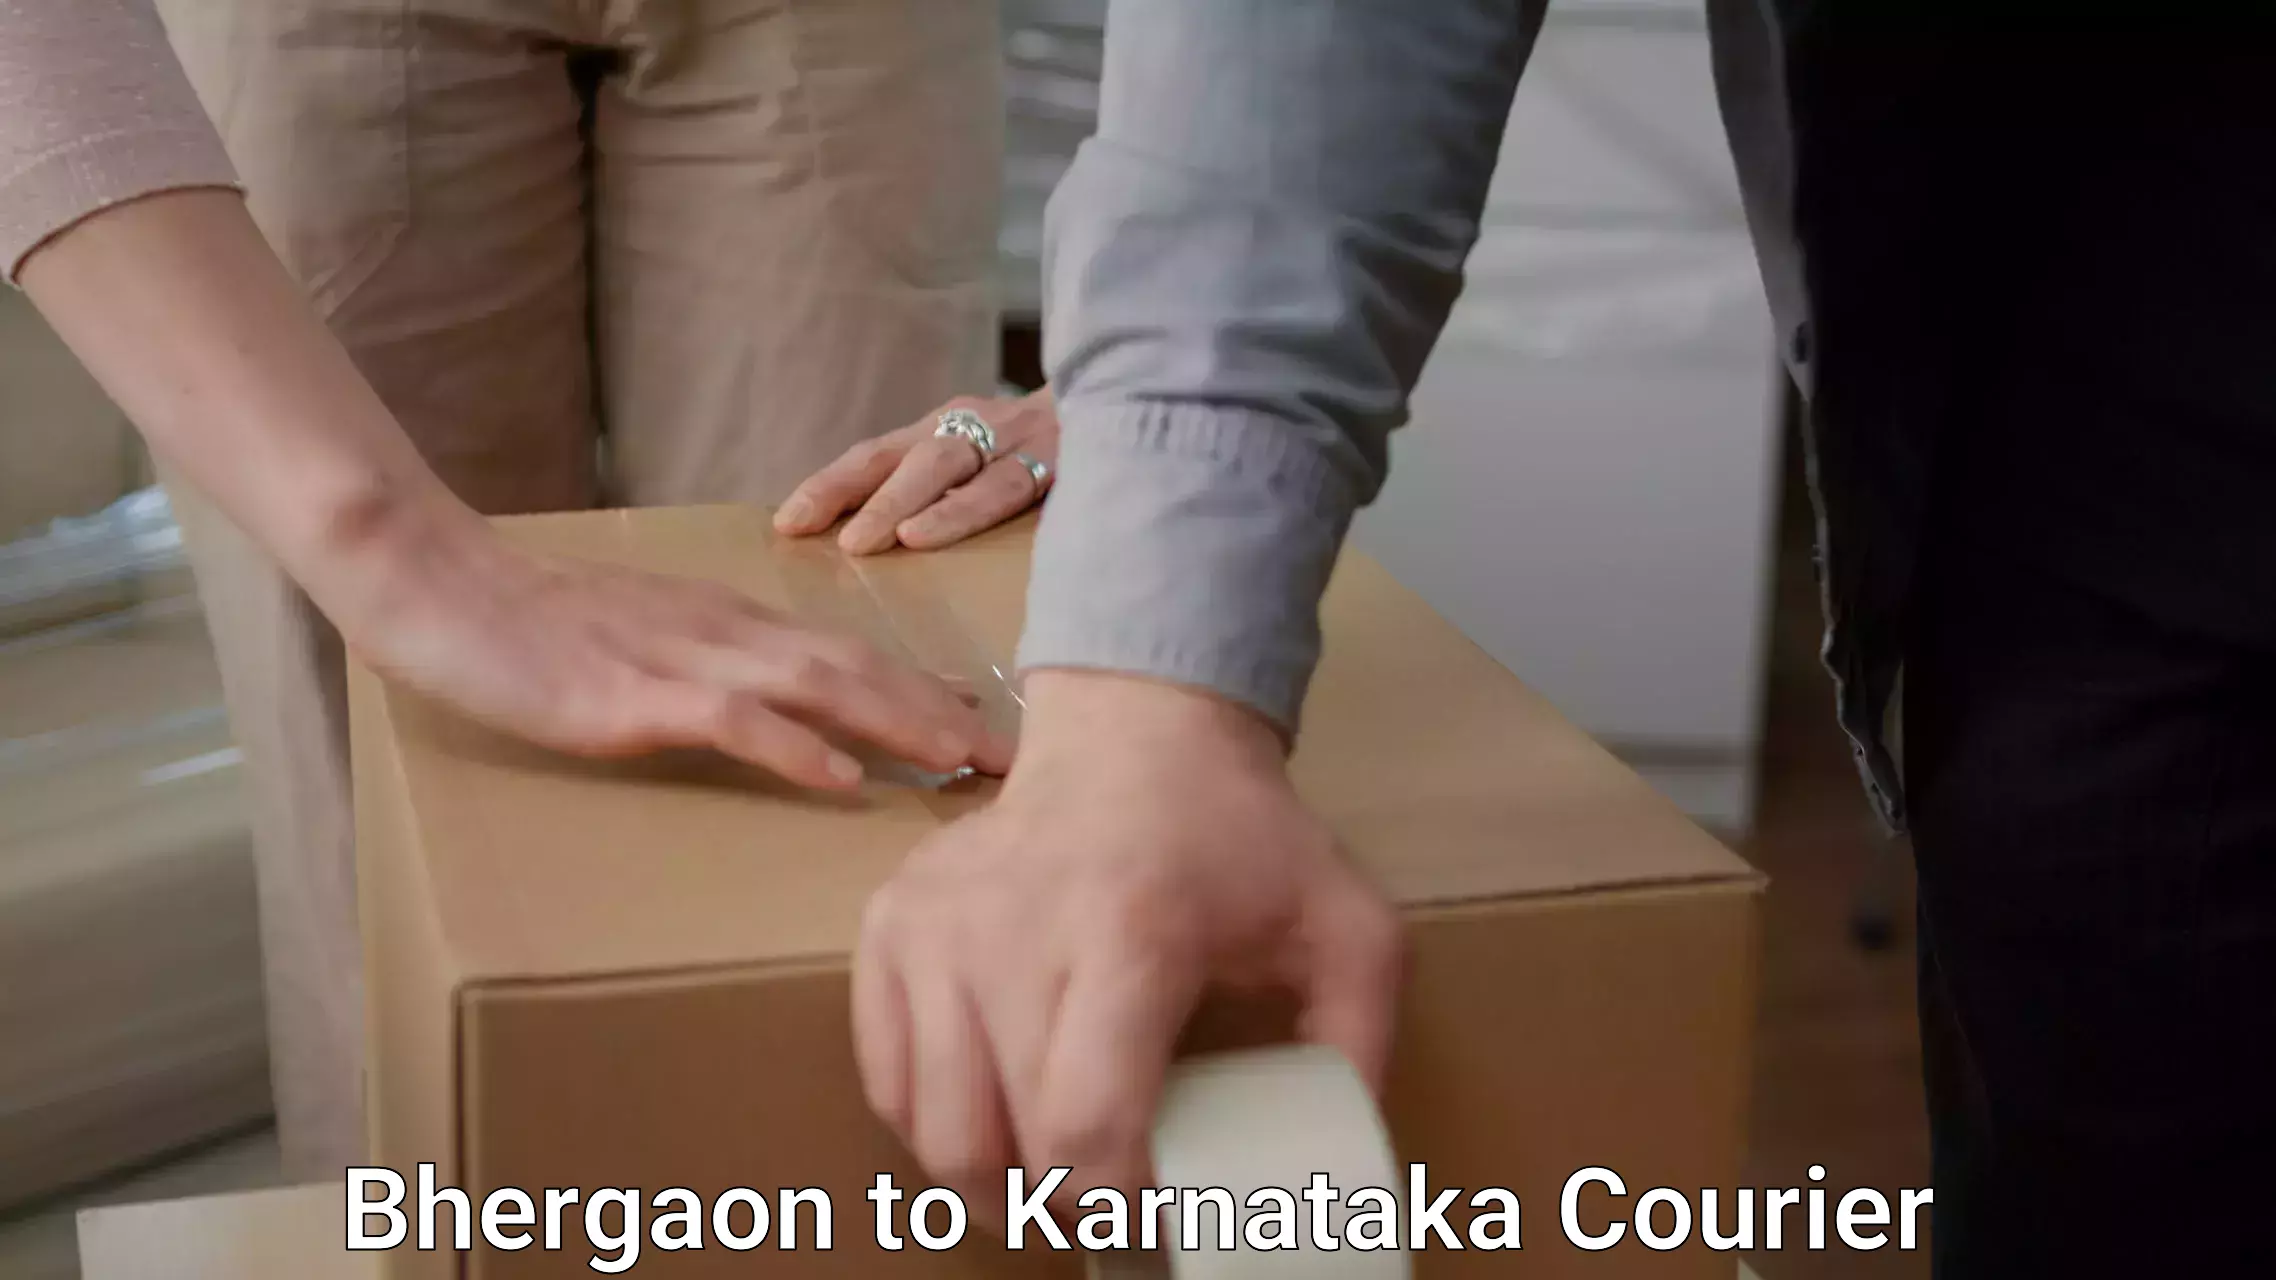 Furniture moving plans Bhergaon to Karnataka